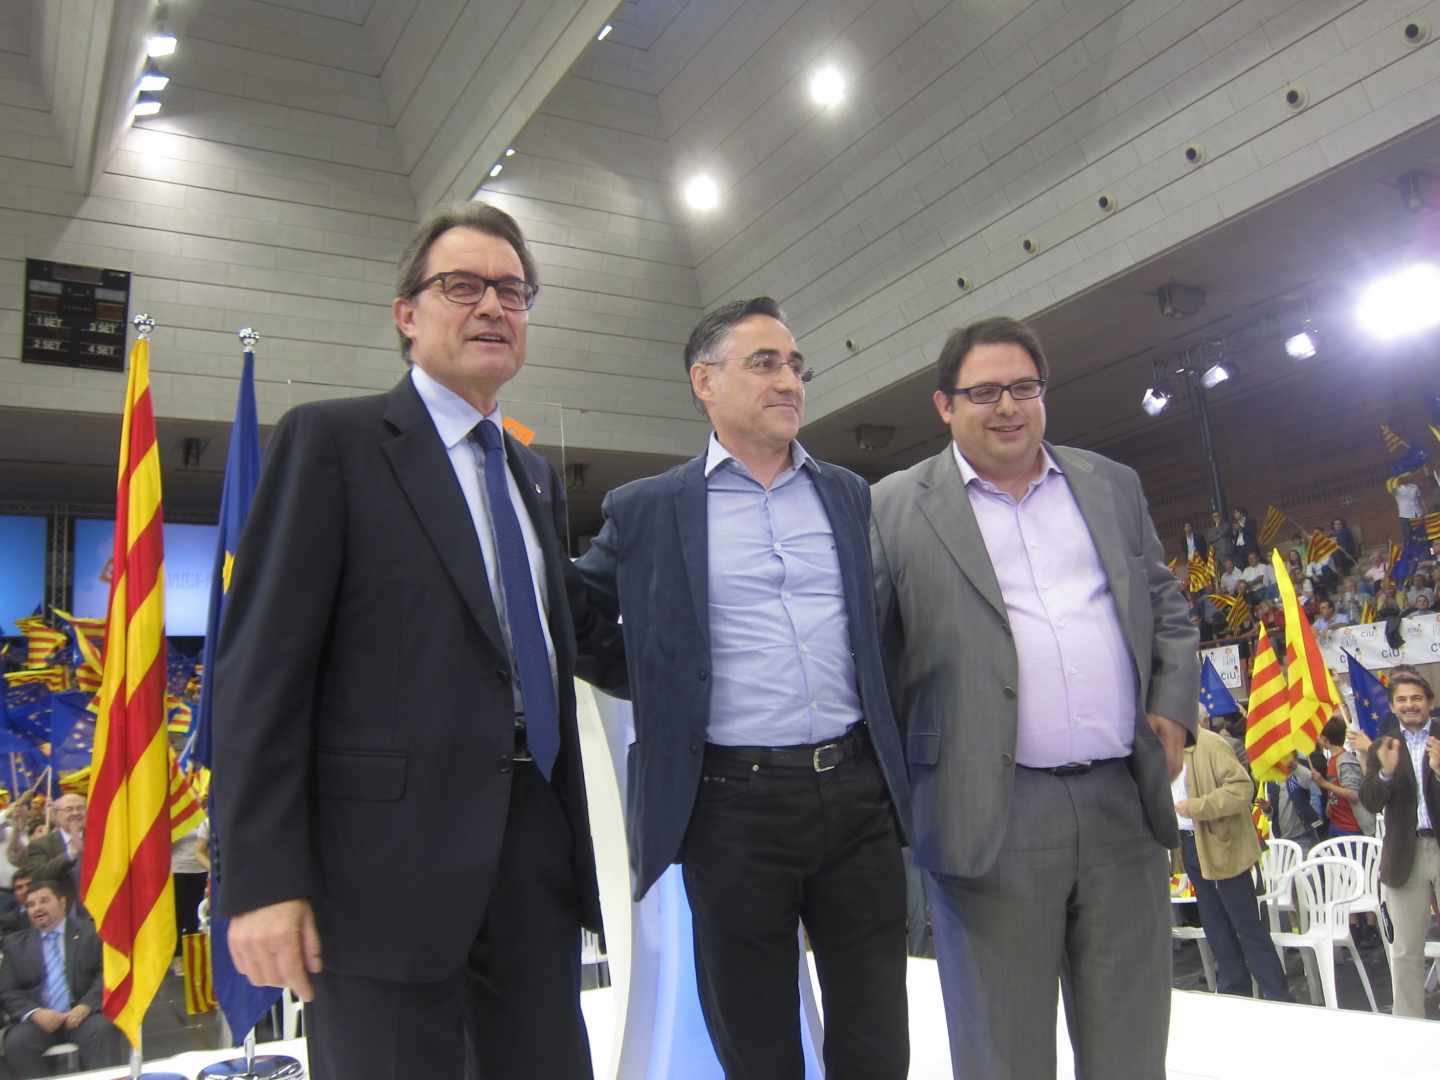 De izquierda a derecha, Artur Mas, Ramon Tremosa y Francesc Gambús en un acto en mayo de 2014.